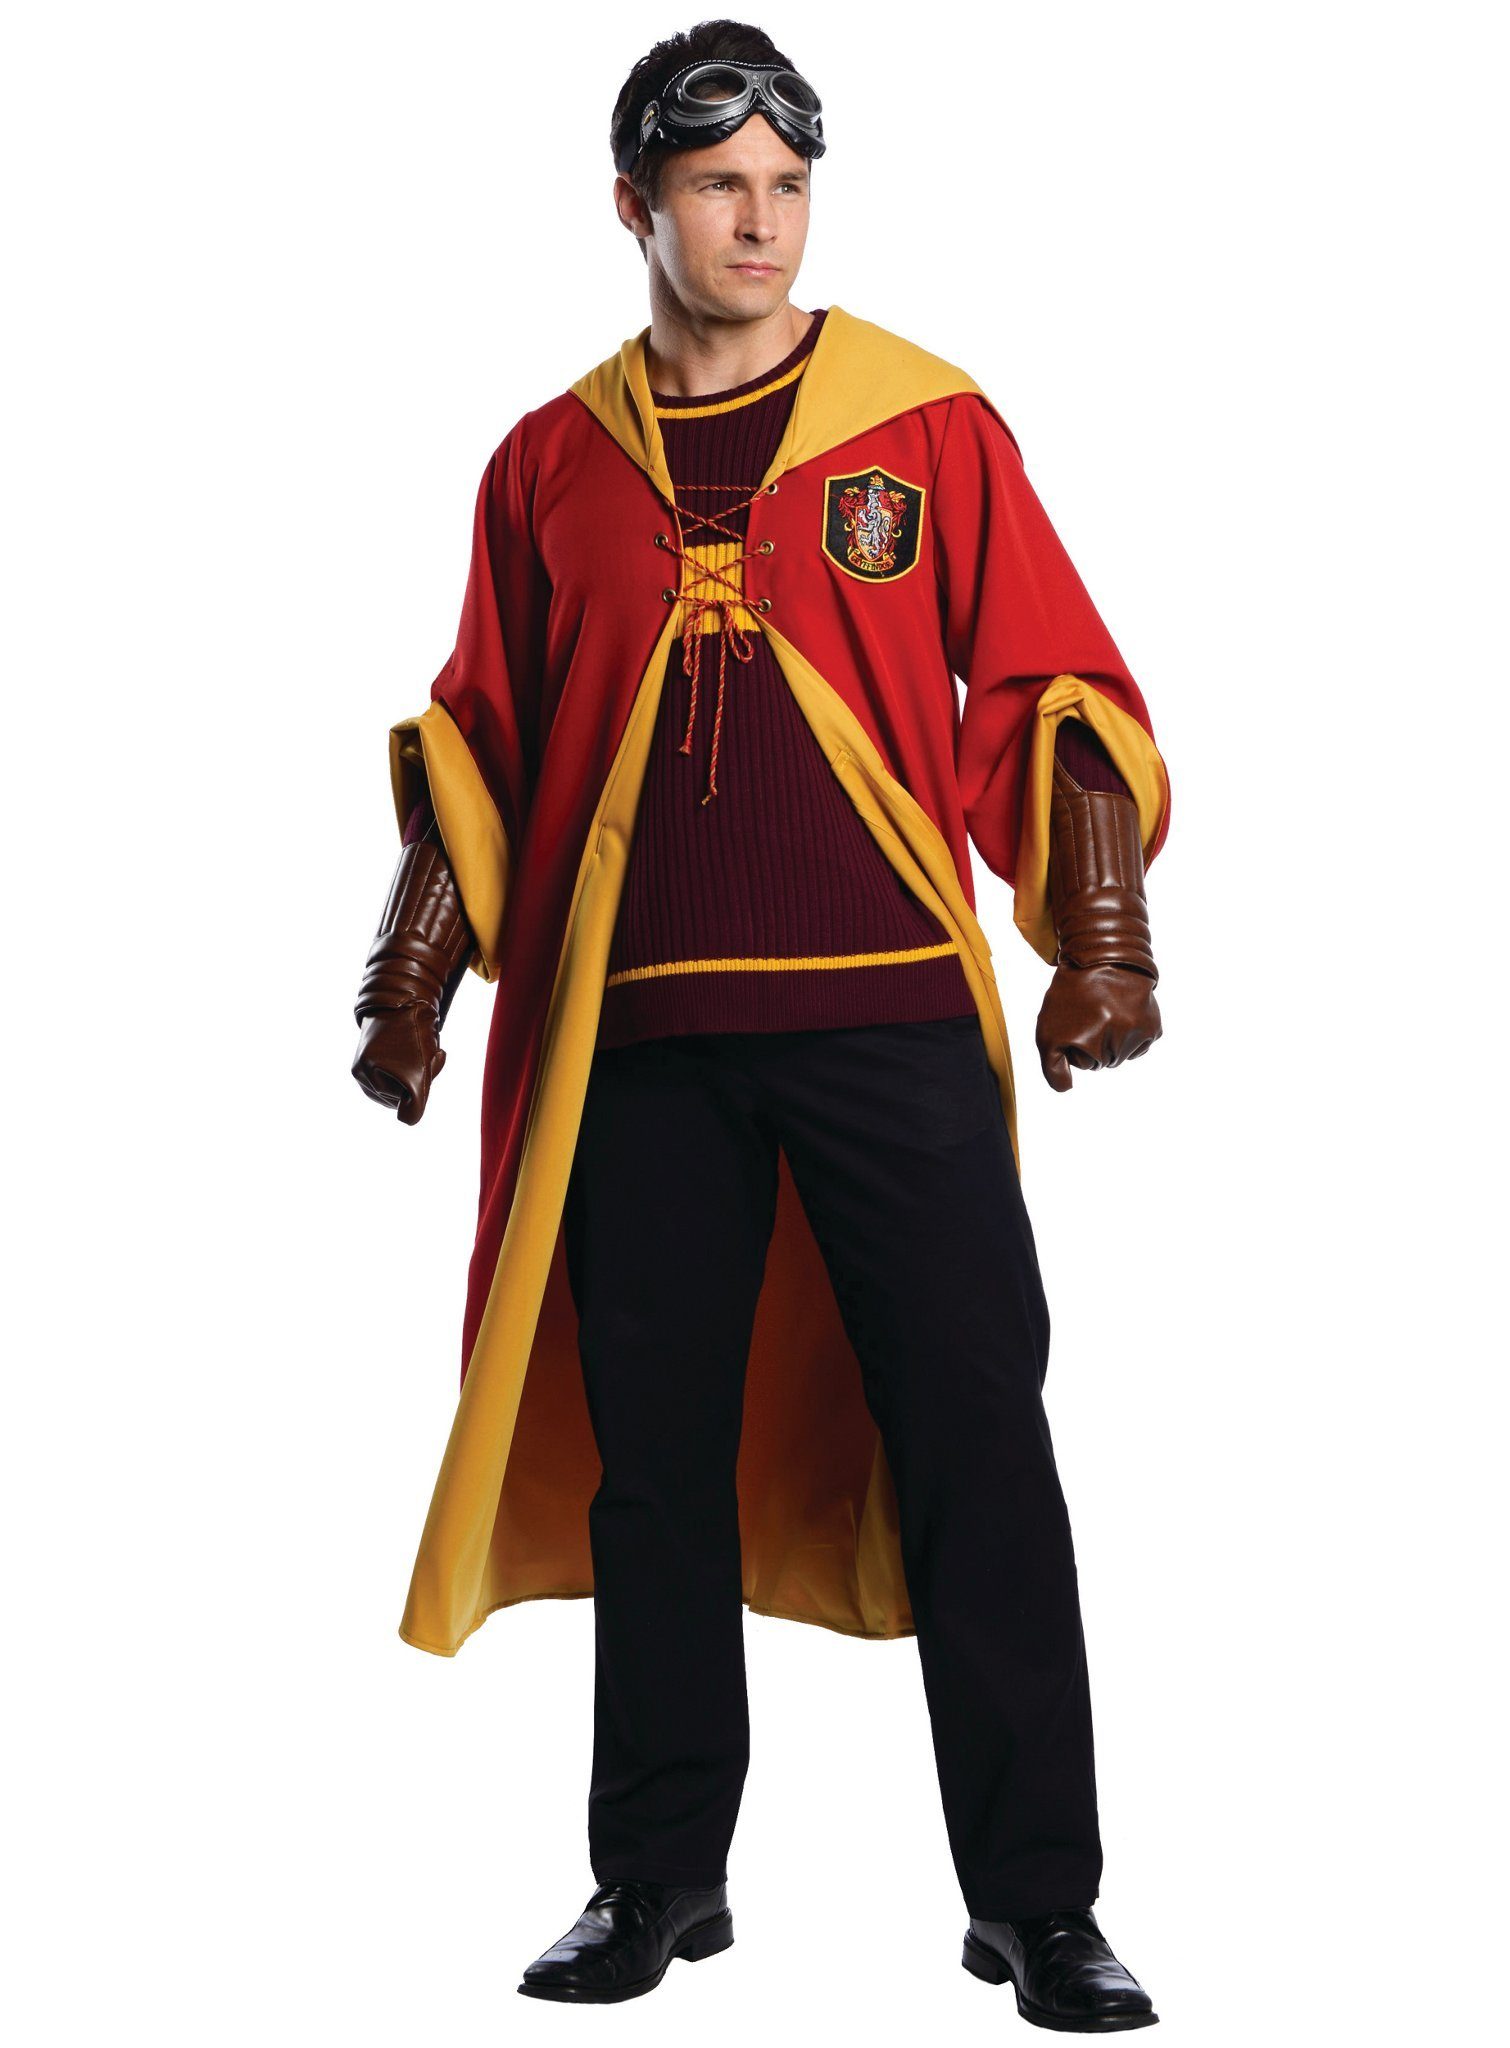 Metamorph Kostüm Harry Potter Gryffindor Quidditch, Gut gewappnet gegen die anderen Hogwarts-Häuser!